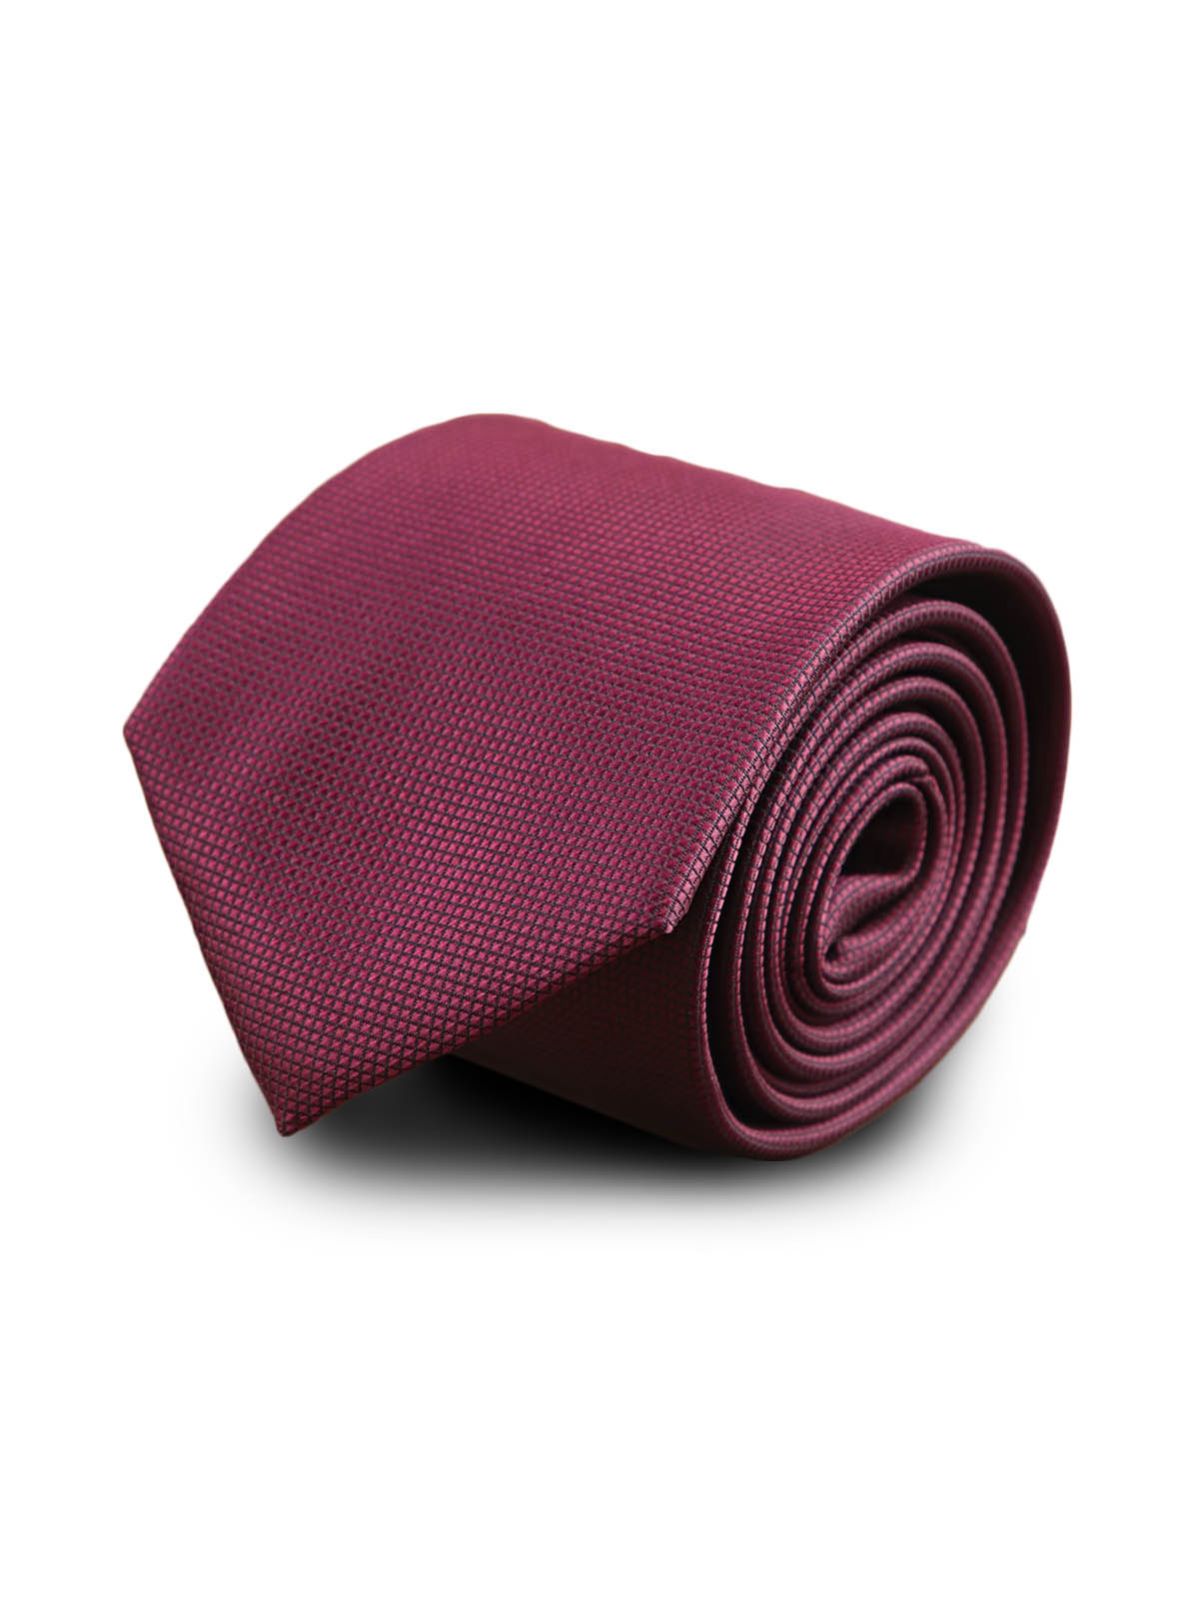 Галстук широкий бордовый с клеточной текстурой описание: Фасон - Широкий галстук, Материал - Микрофибра, Цвет - Бордовый, Размер - 7 см х 140 см, Страна производства - Турция.